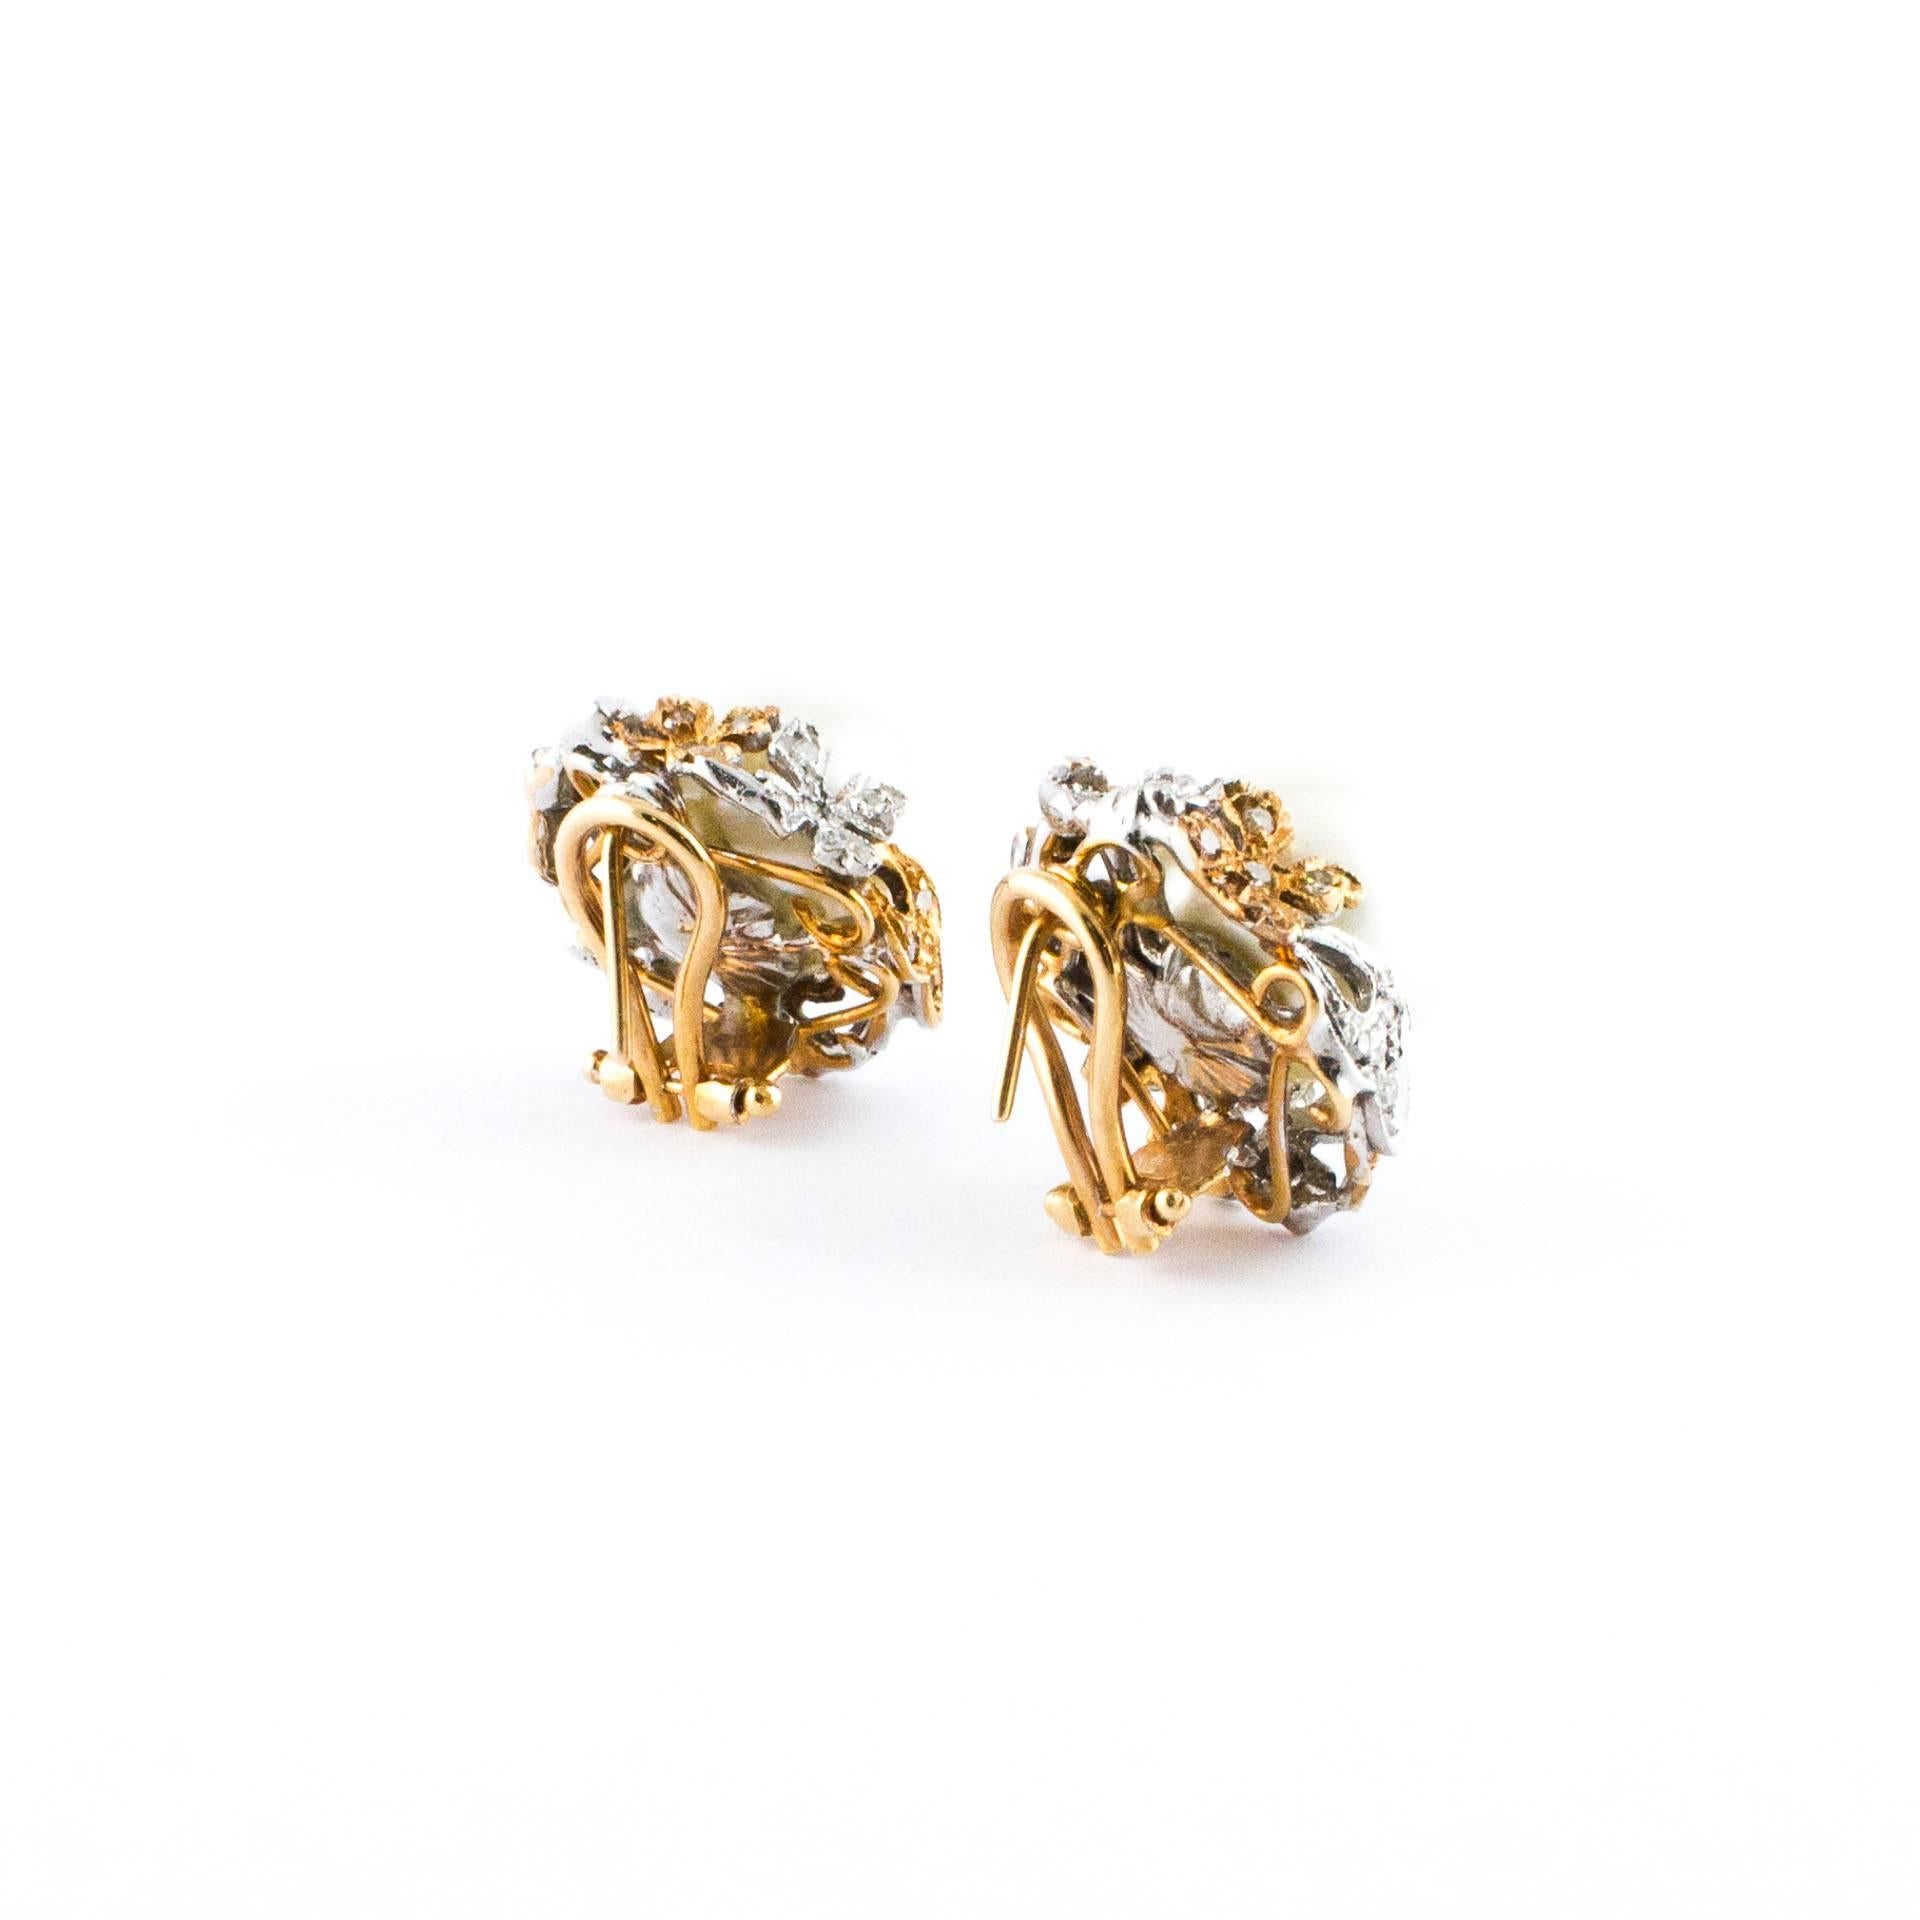 Mixed Cut Diamonds Australian Pearls Rose Gold Drop Earrings